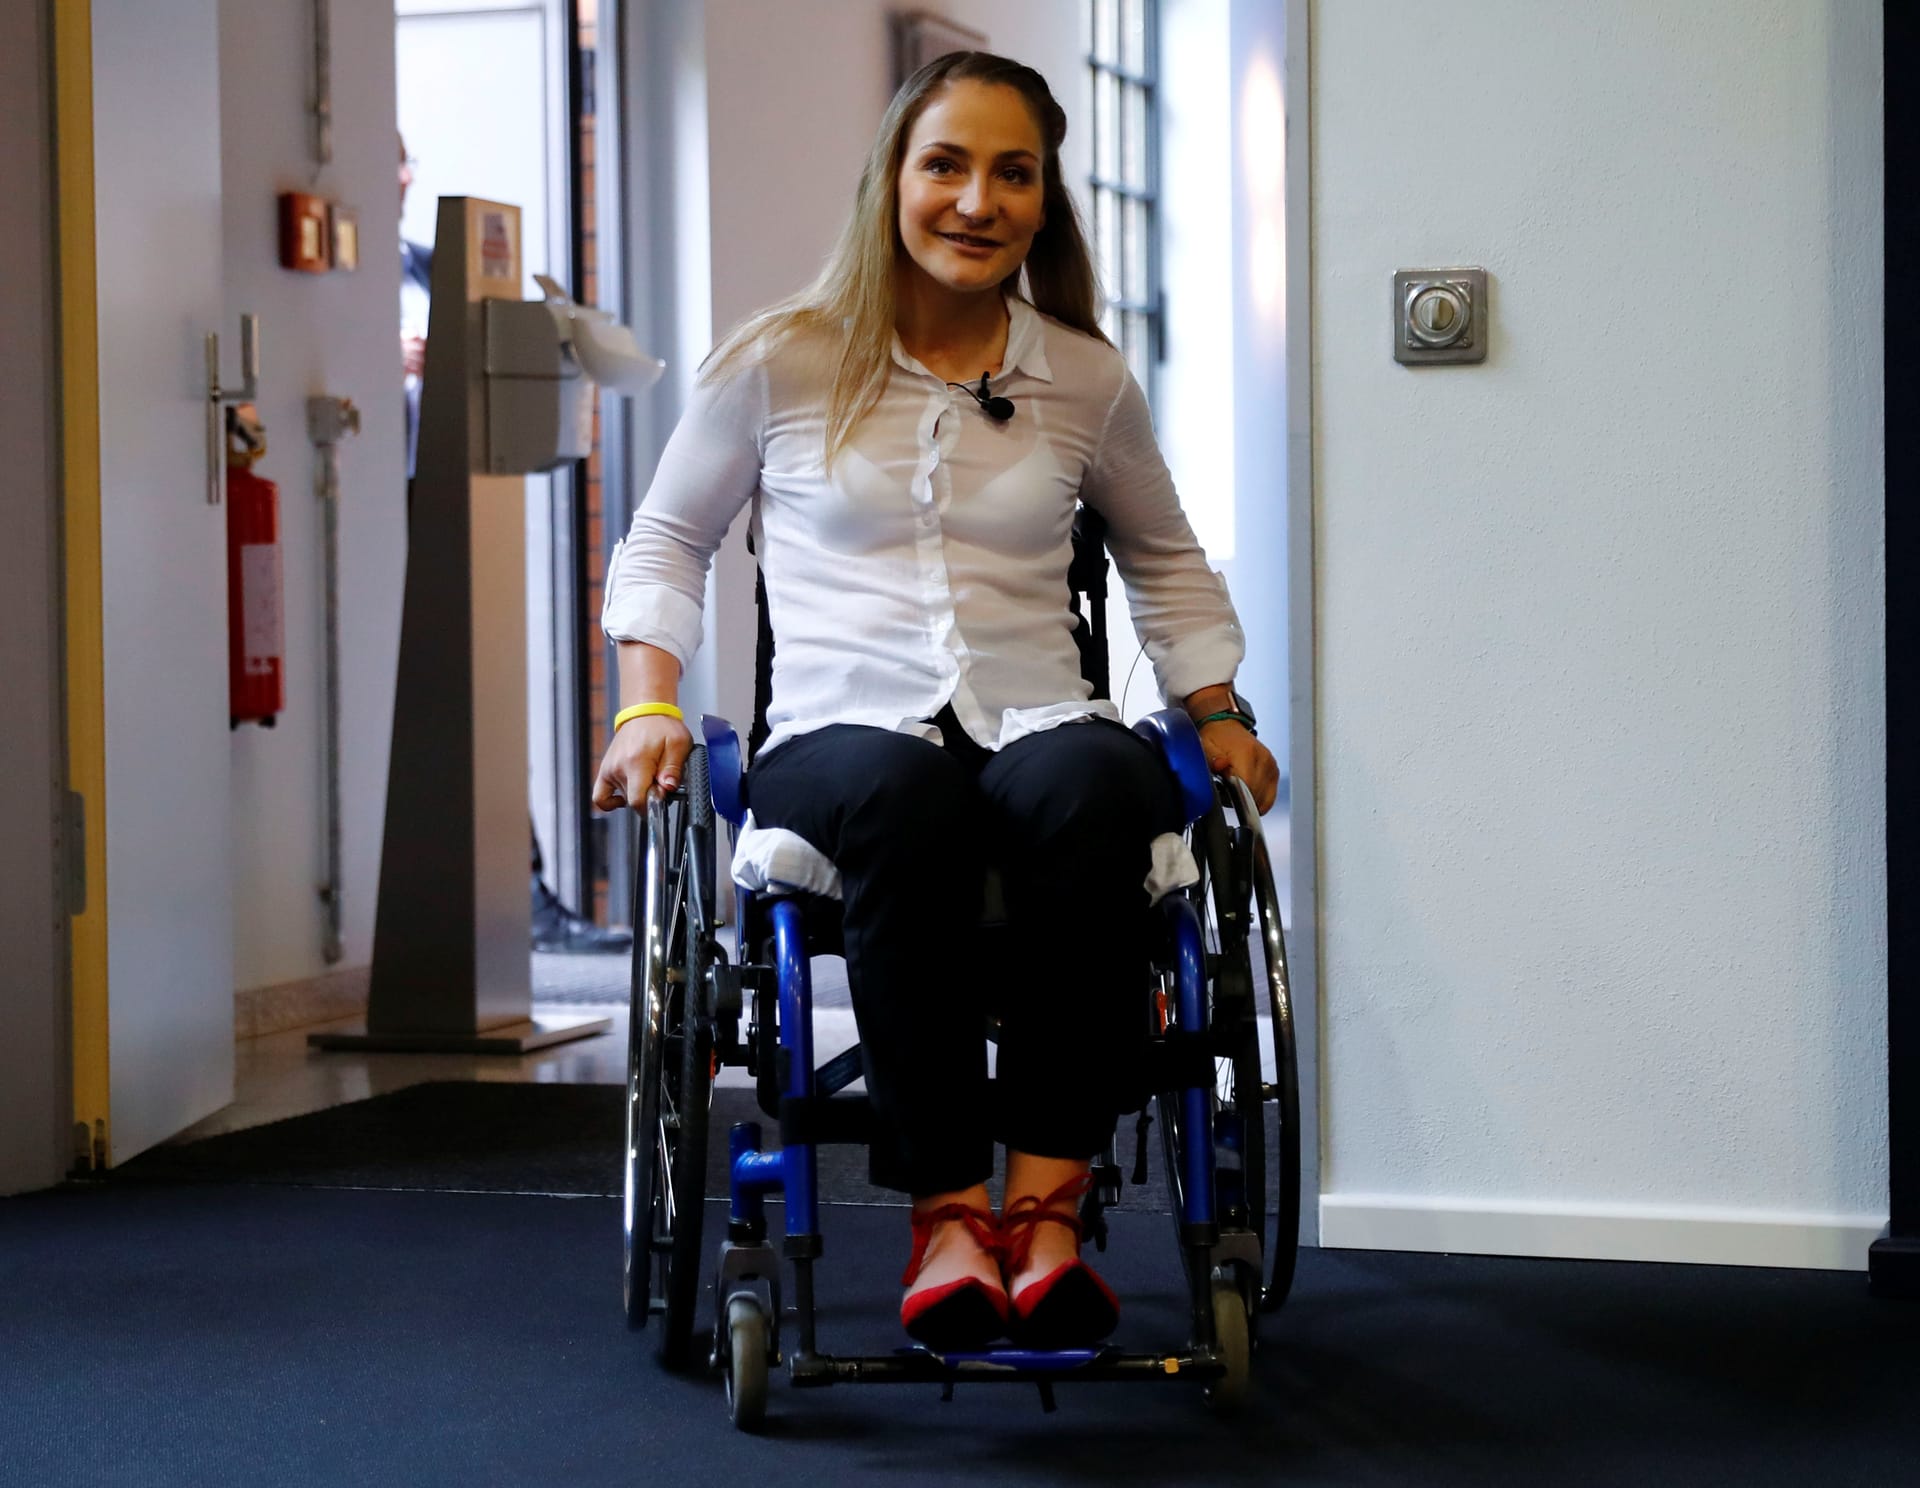 Pressekonferenz im Krankenhaus: Kristina Vogel zeigt sich nach der tragischen Diagnose zum ersten Mal im Rollstuhl.